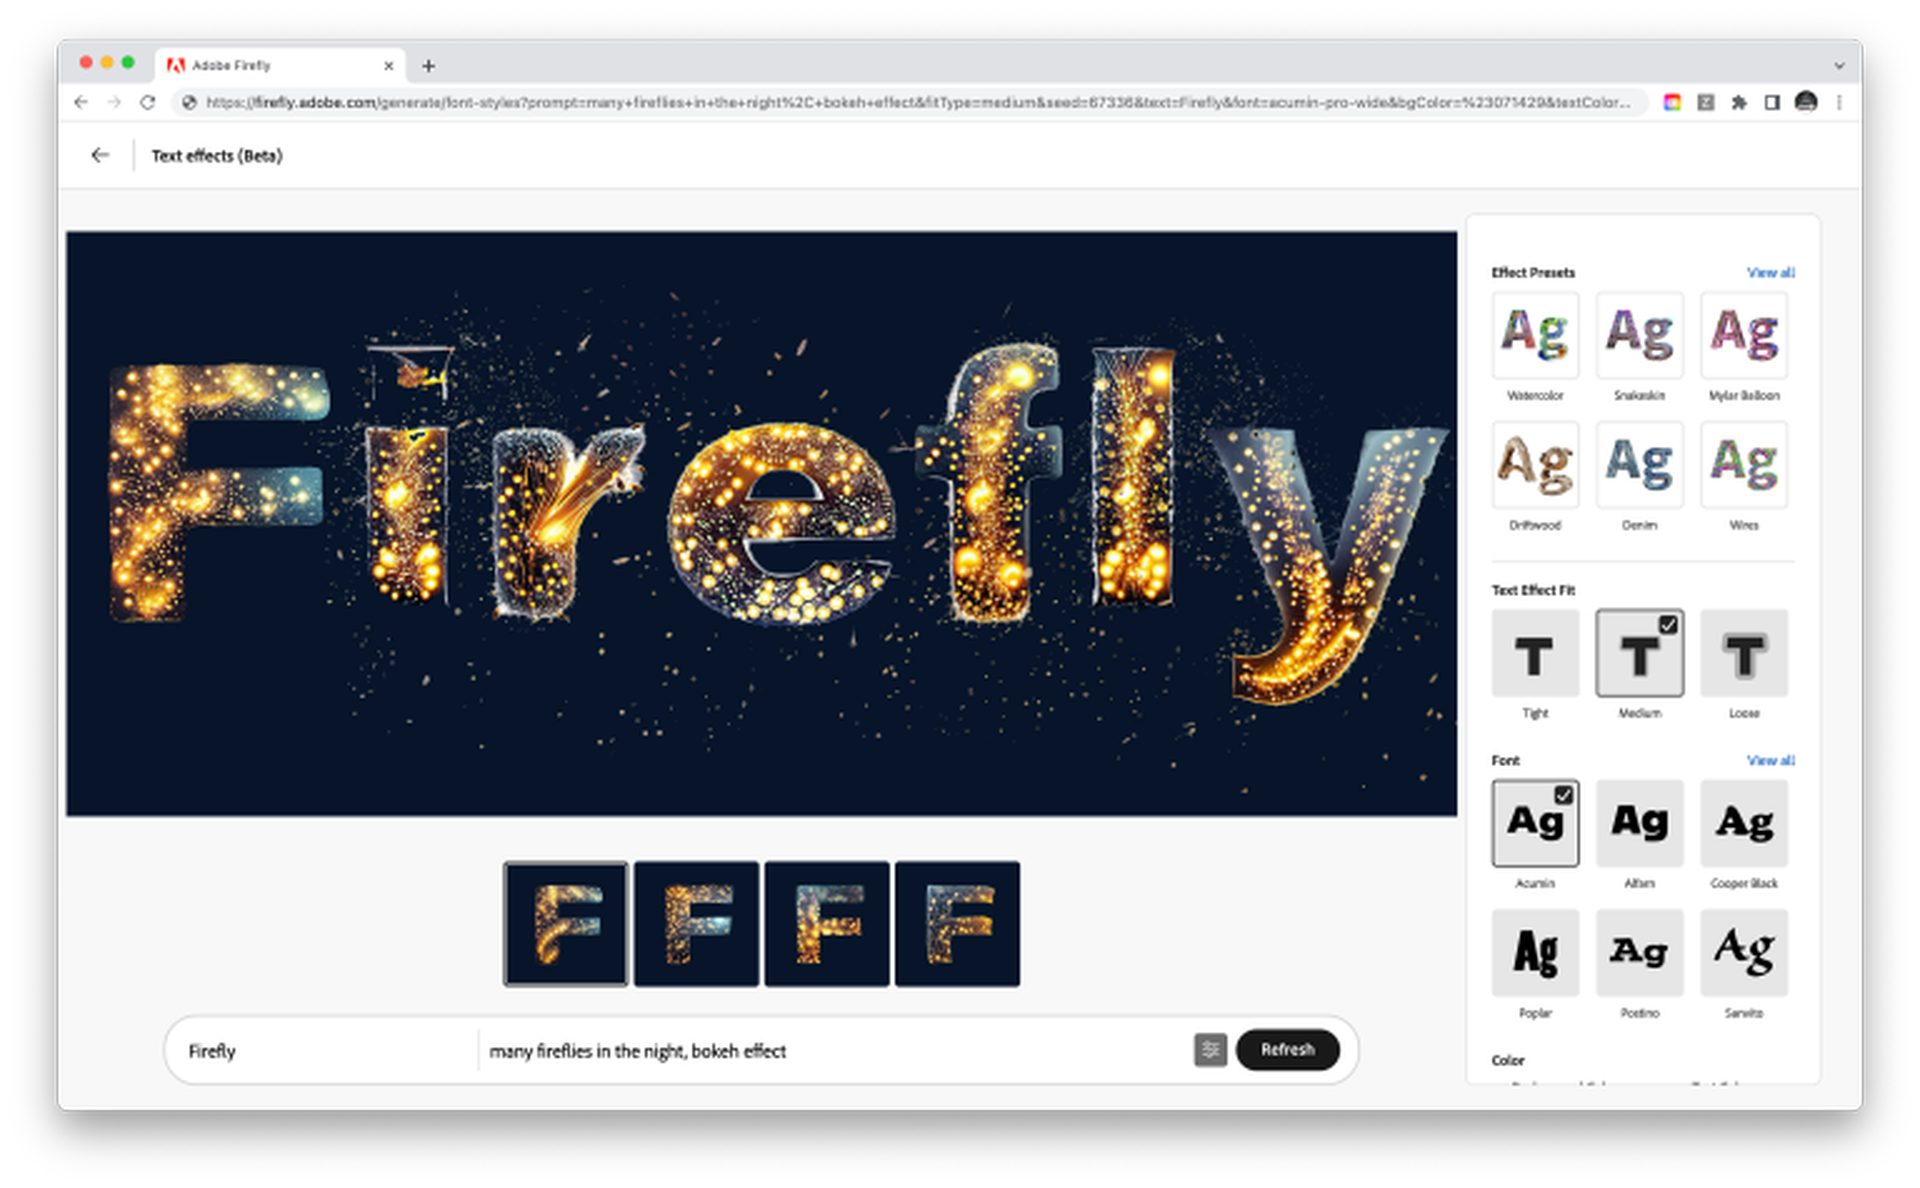 ¿Cómo usar Adobe Firefly AI con ejemplos? Aprenda las funciones de Adobe AI y alcance todo el potencial de la IA generativa. Sigue leyendo y descubre más